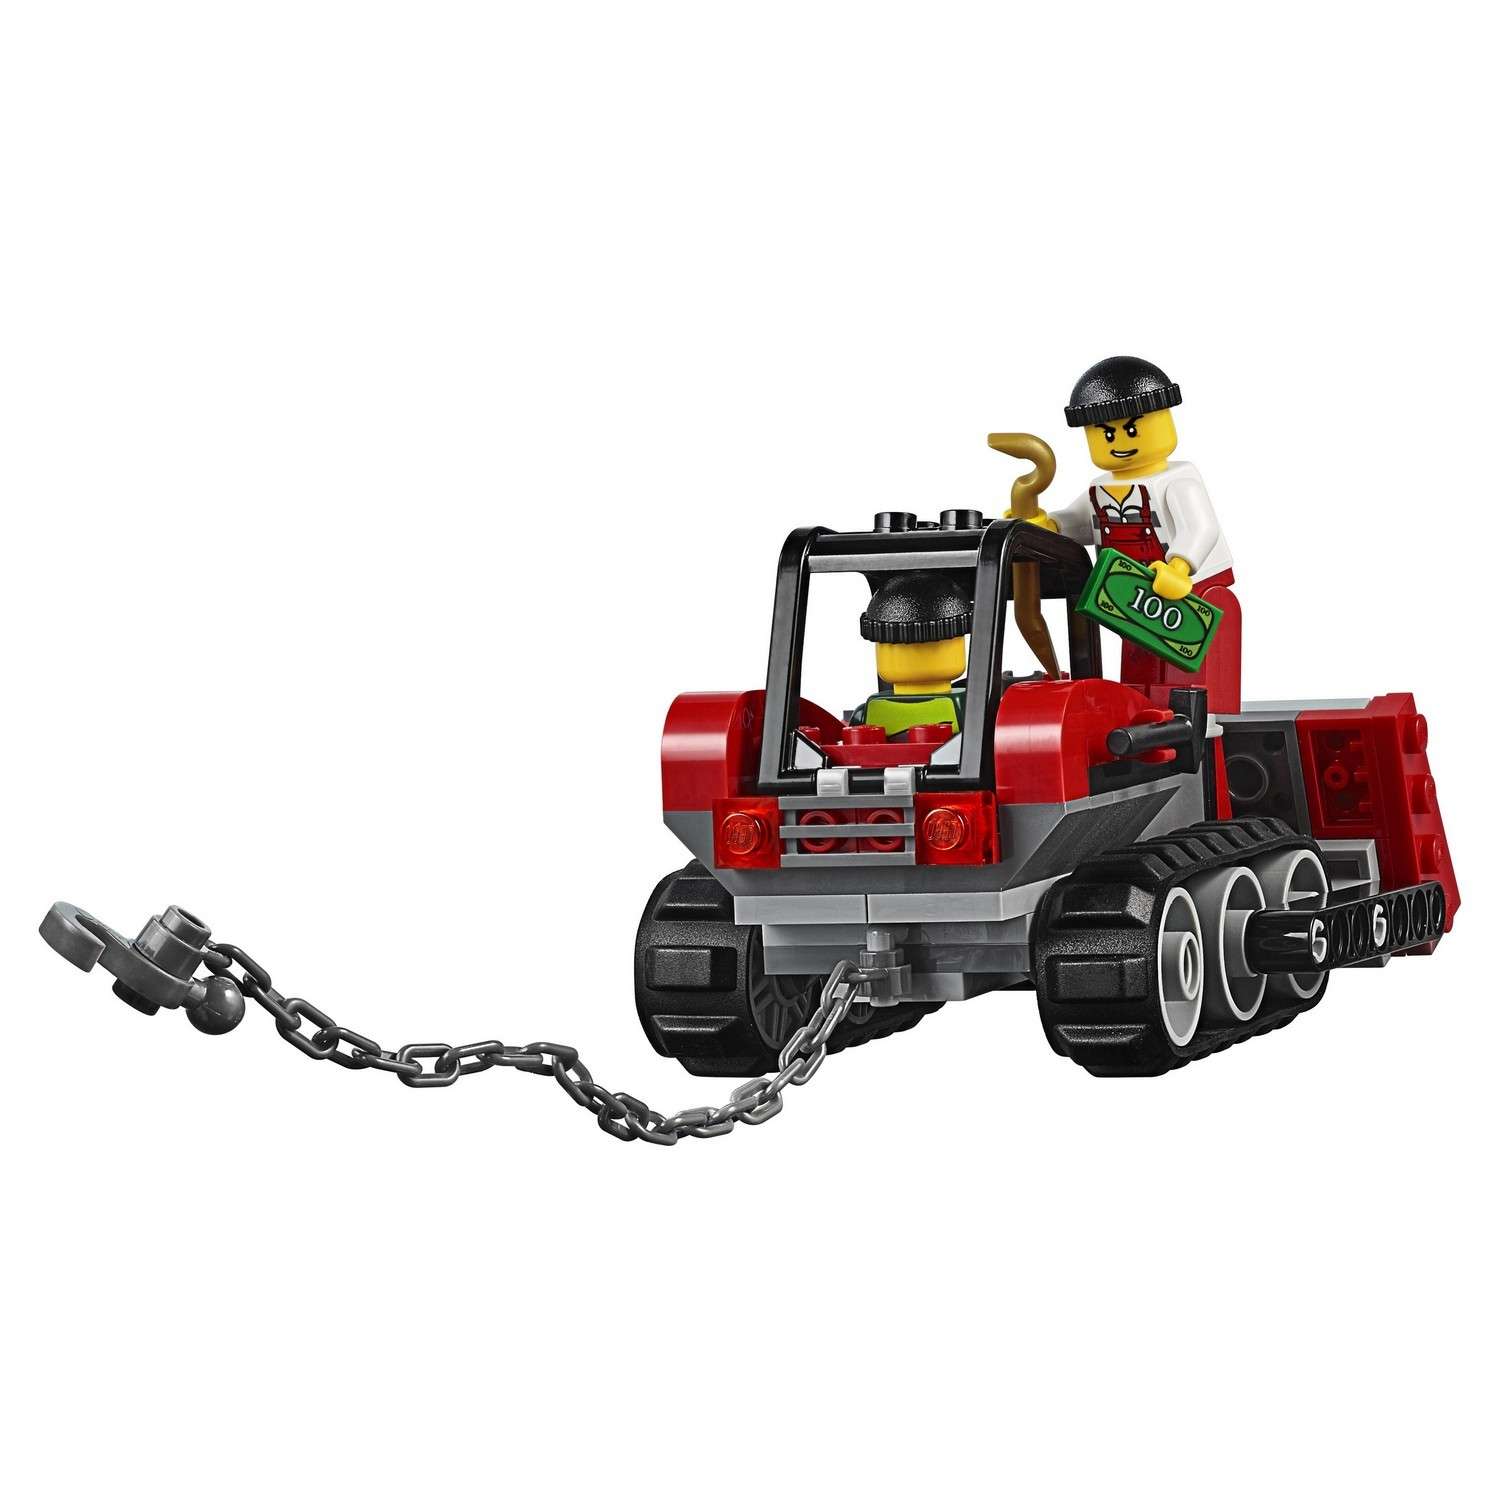 Конструктор LEGO City Police Ограбление на бульдозере (60140) - фото 20